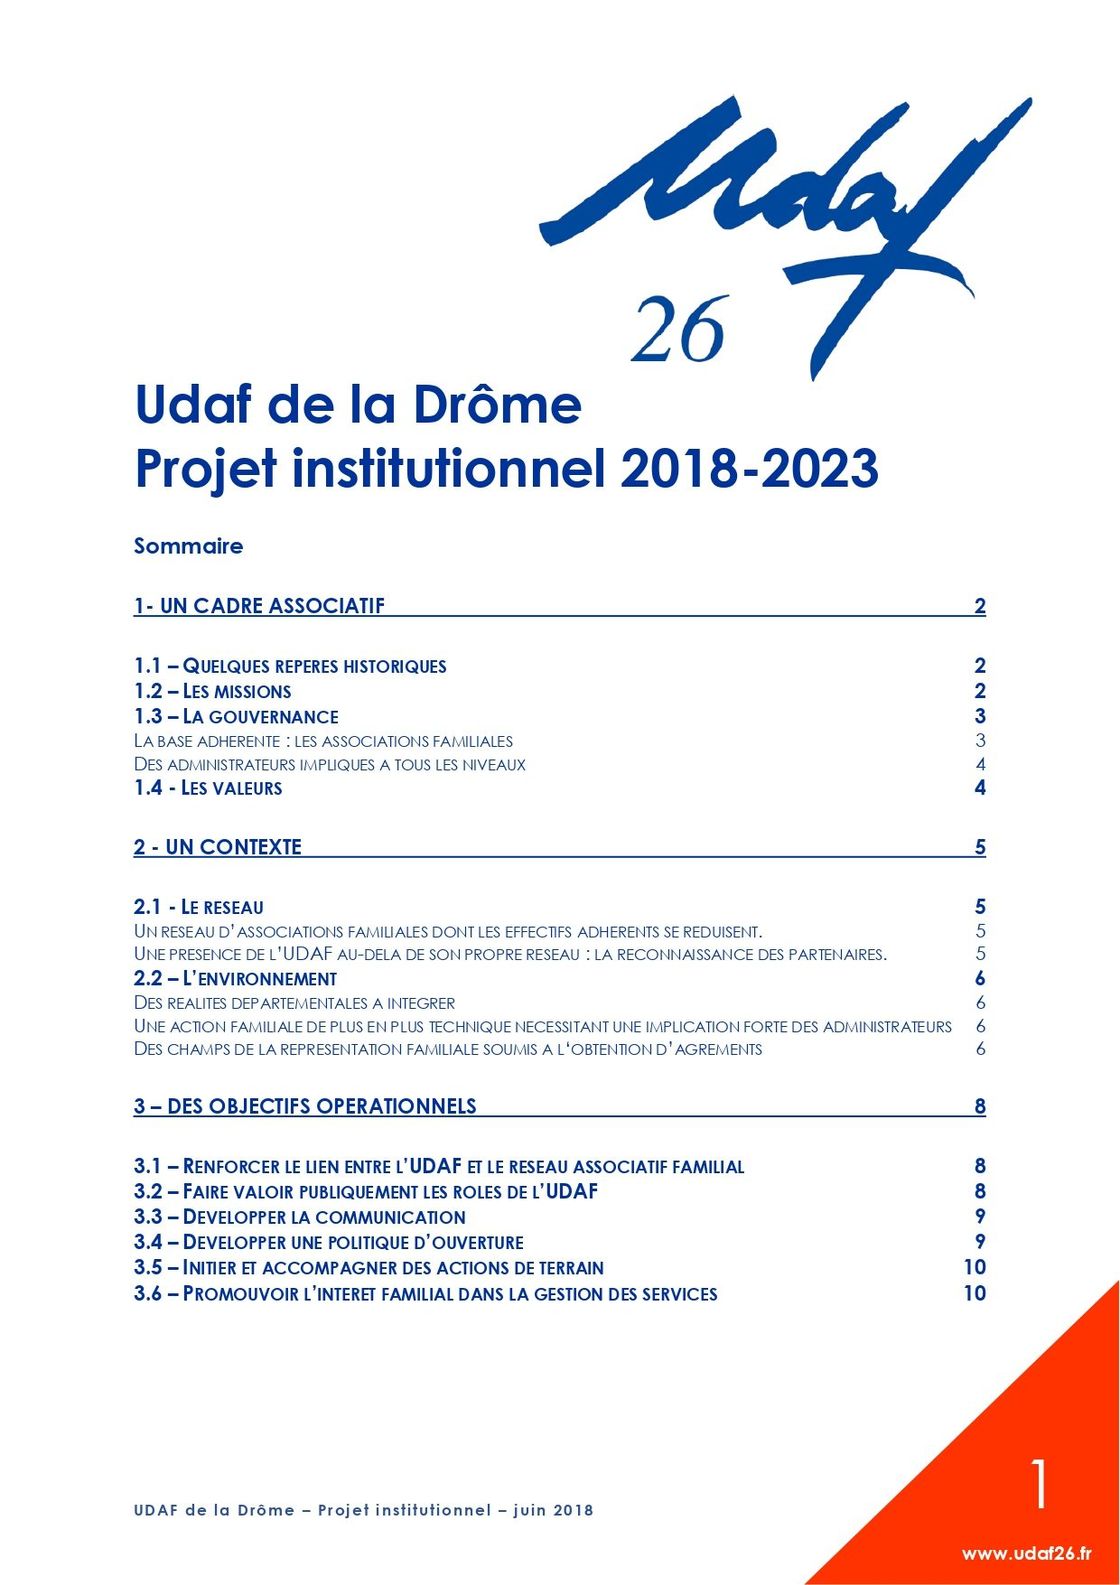 Projet institutionnel 2018-2023 de l'Udaf de la Drôme